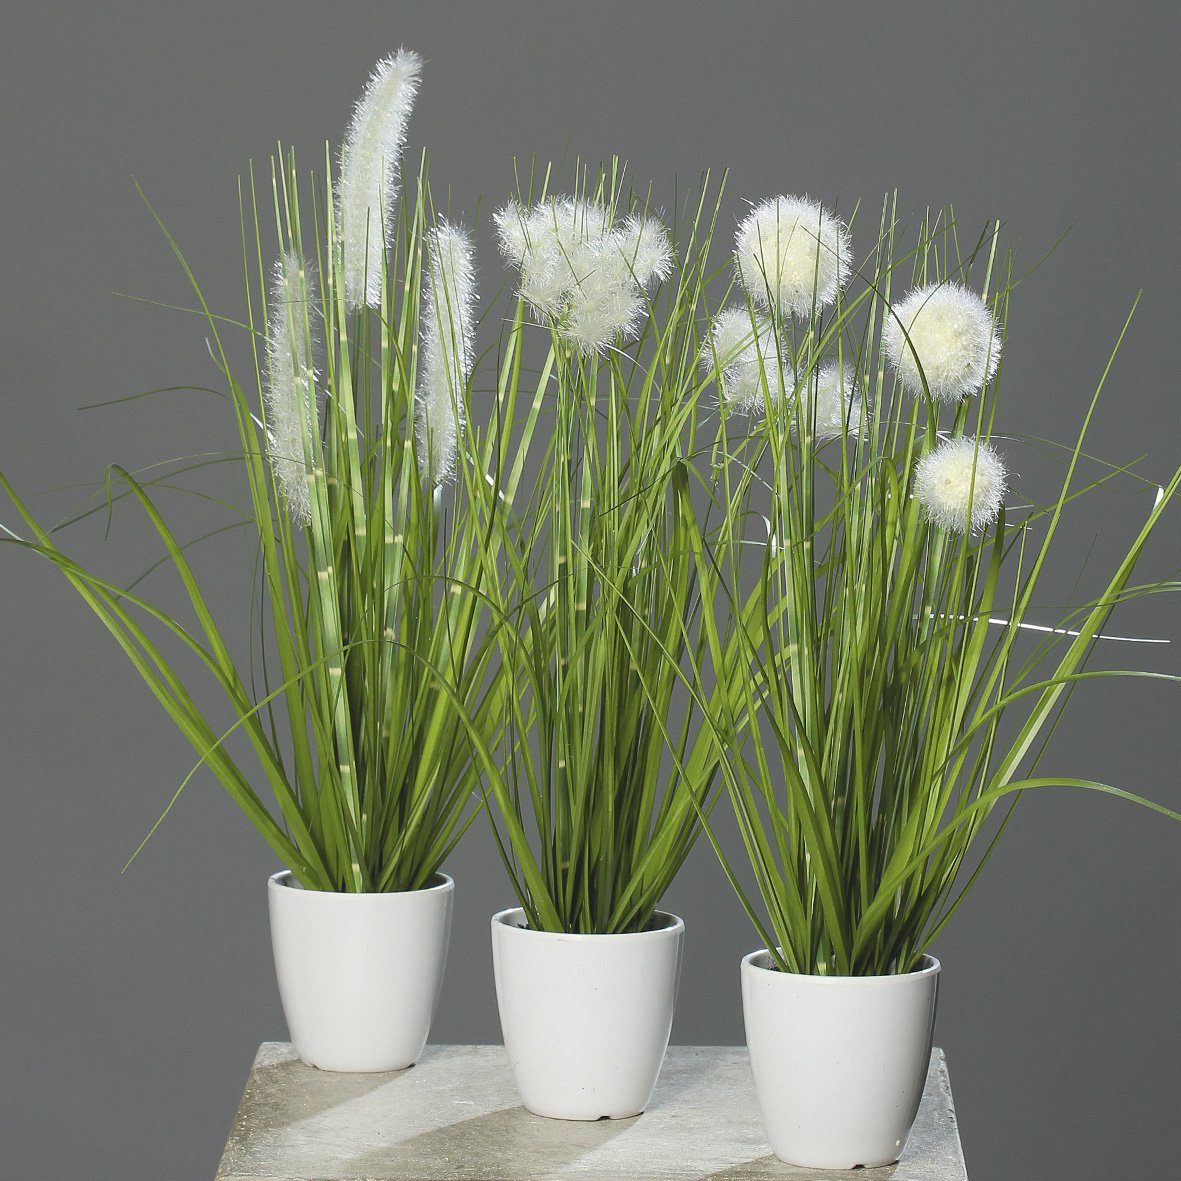 Kunstpflanze Kunstpflanze Gras im weißen Topf 3 Stück H38cm Grün/Creme Kunstgras, mucPlants